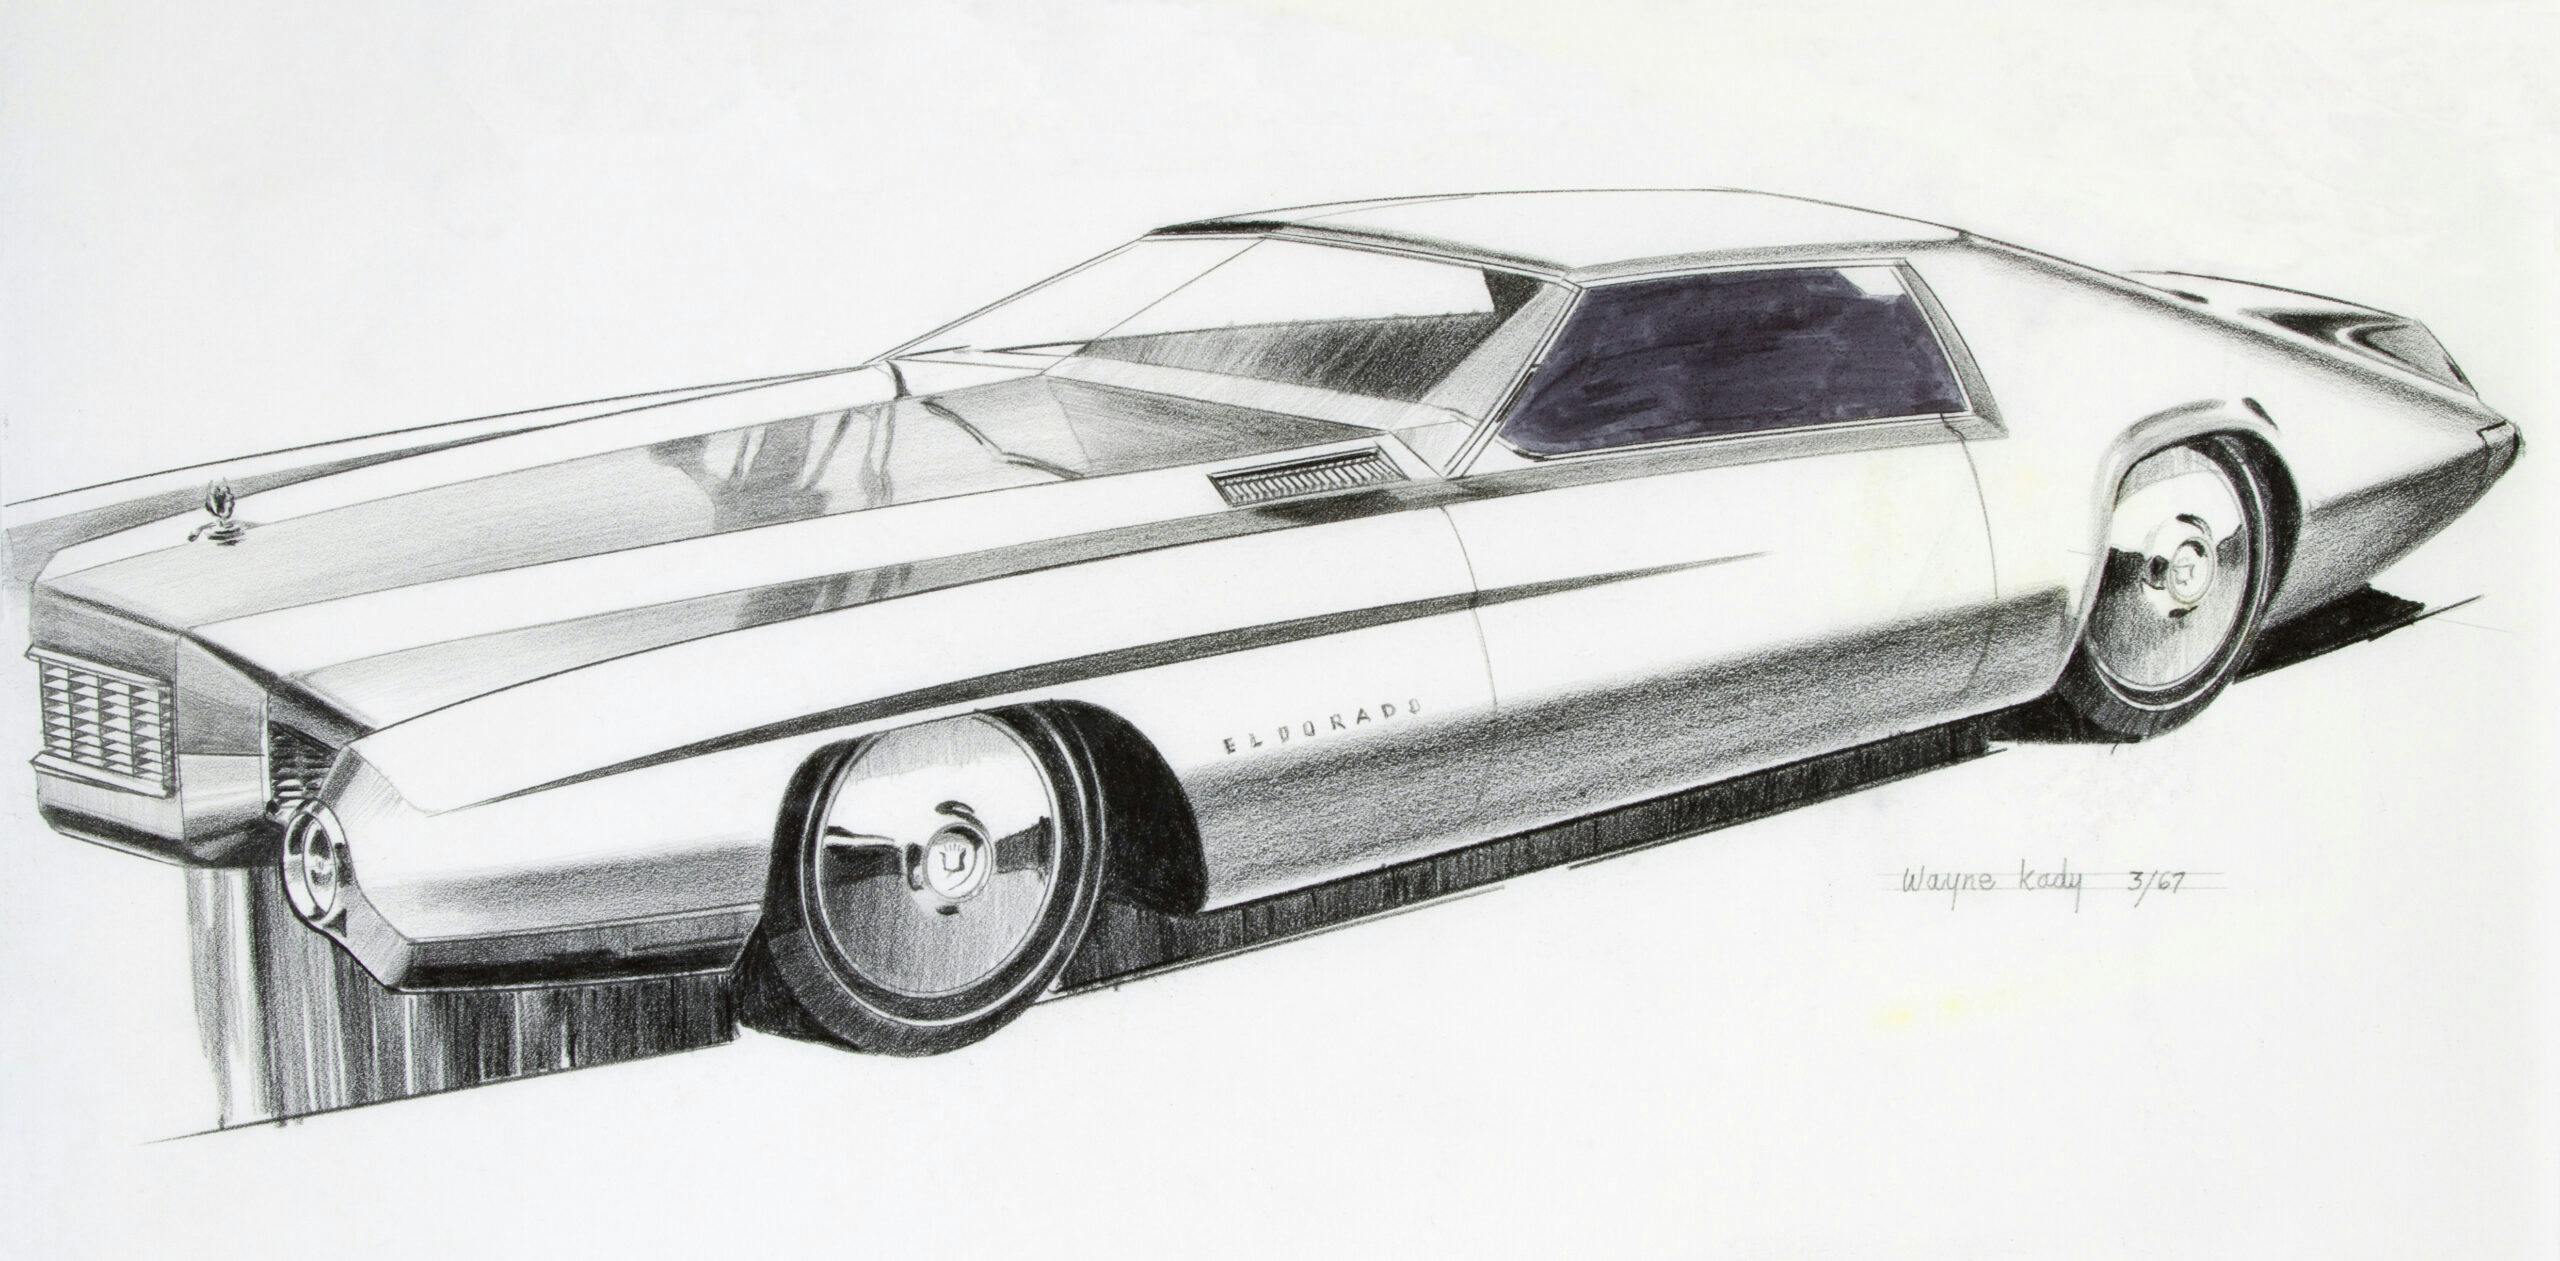 1967 Cadillac Eldorado pencil drawing car design wayne kady